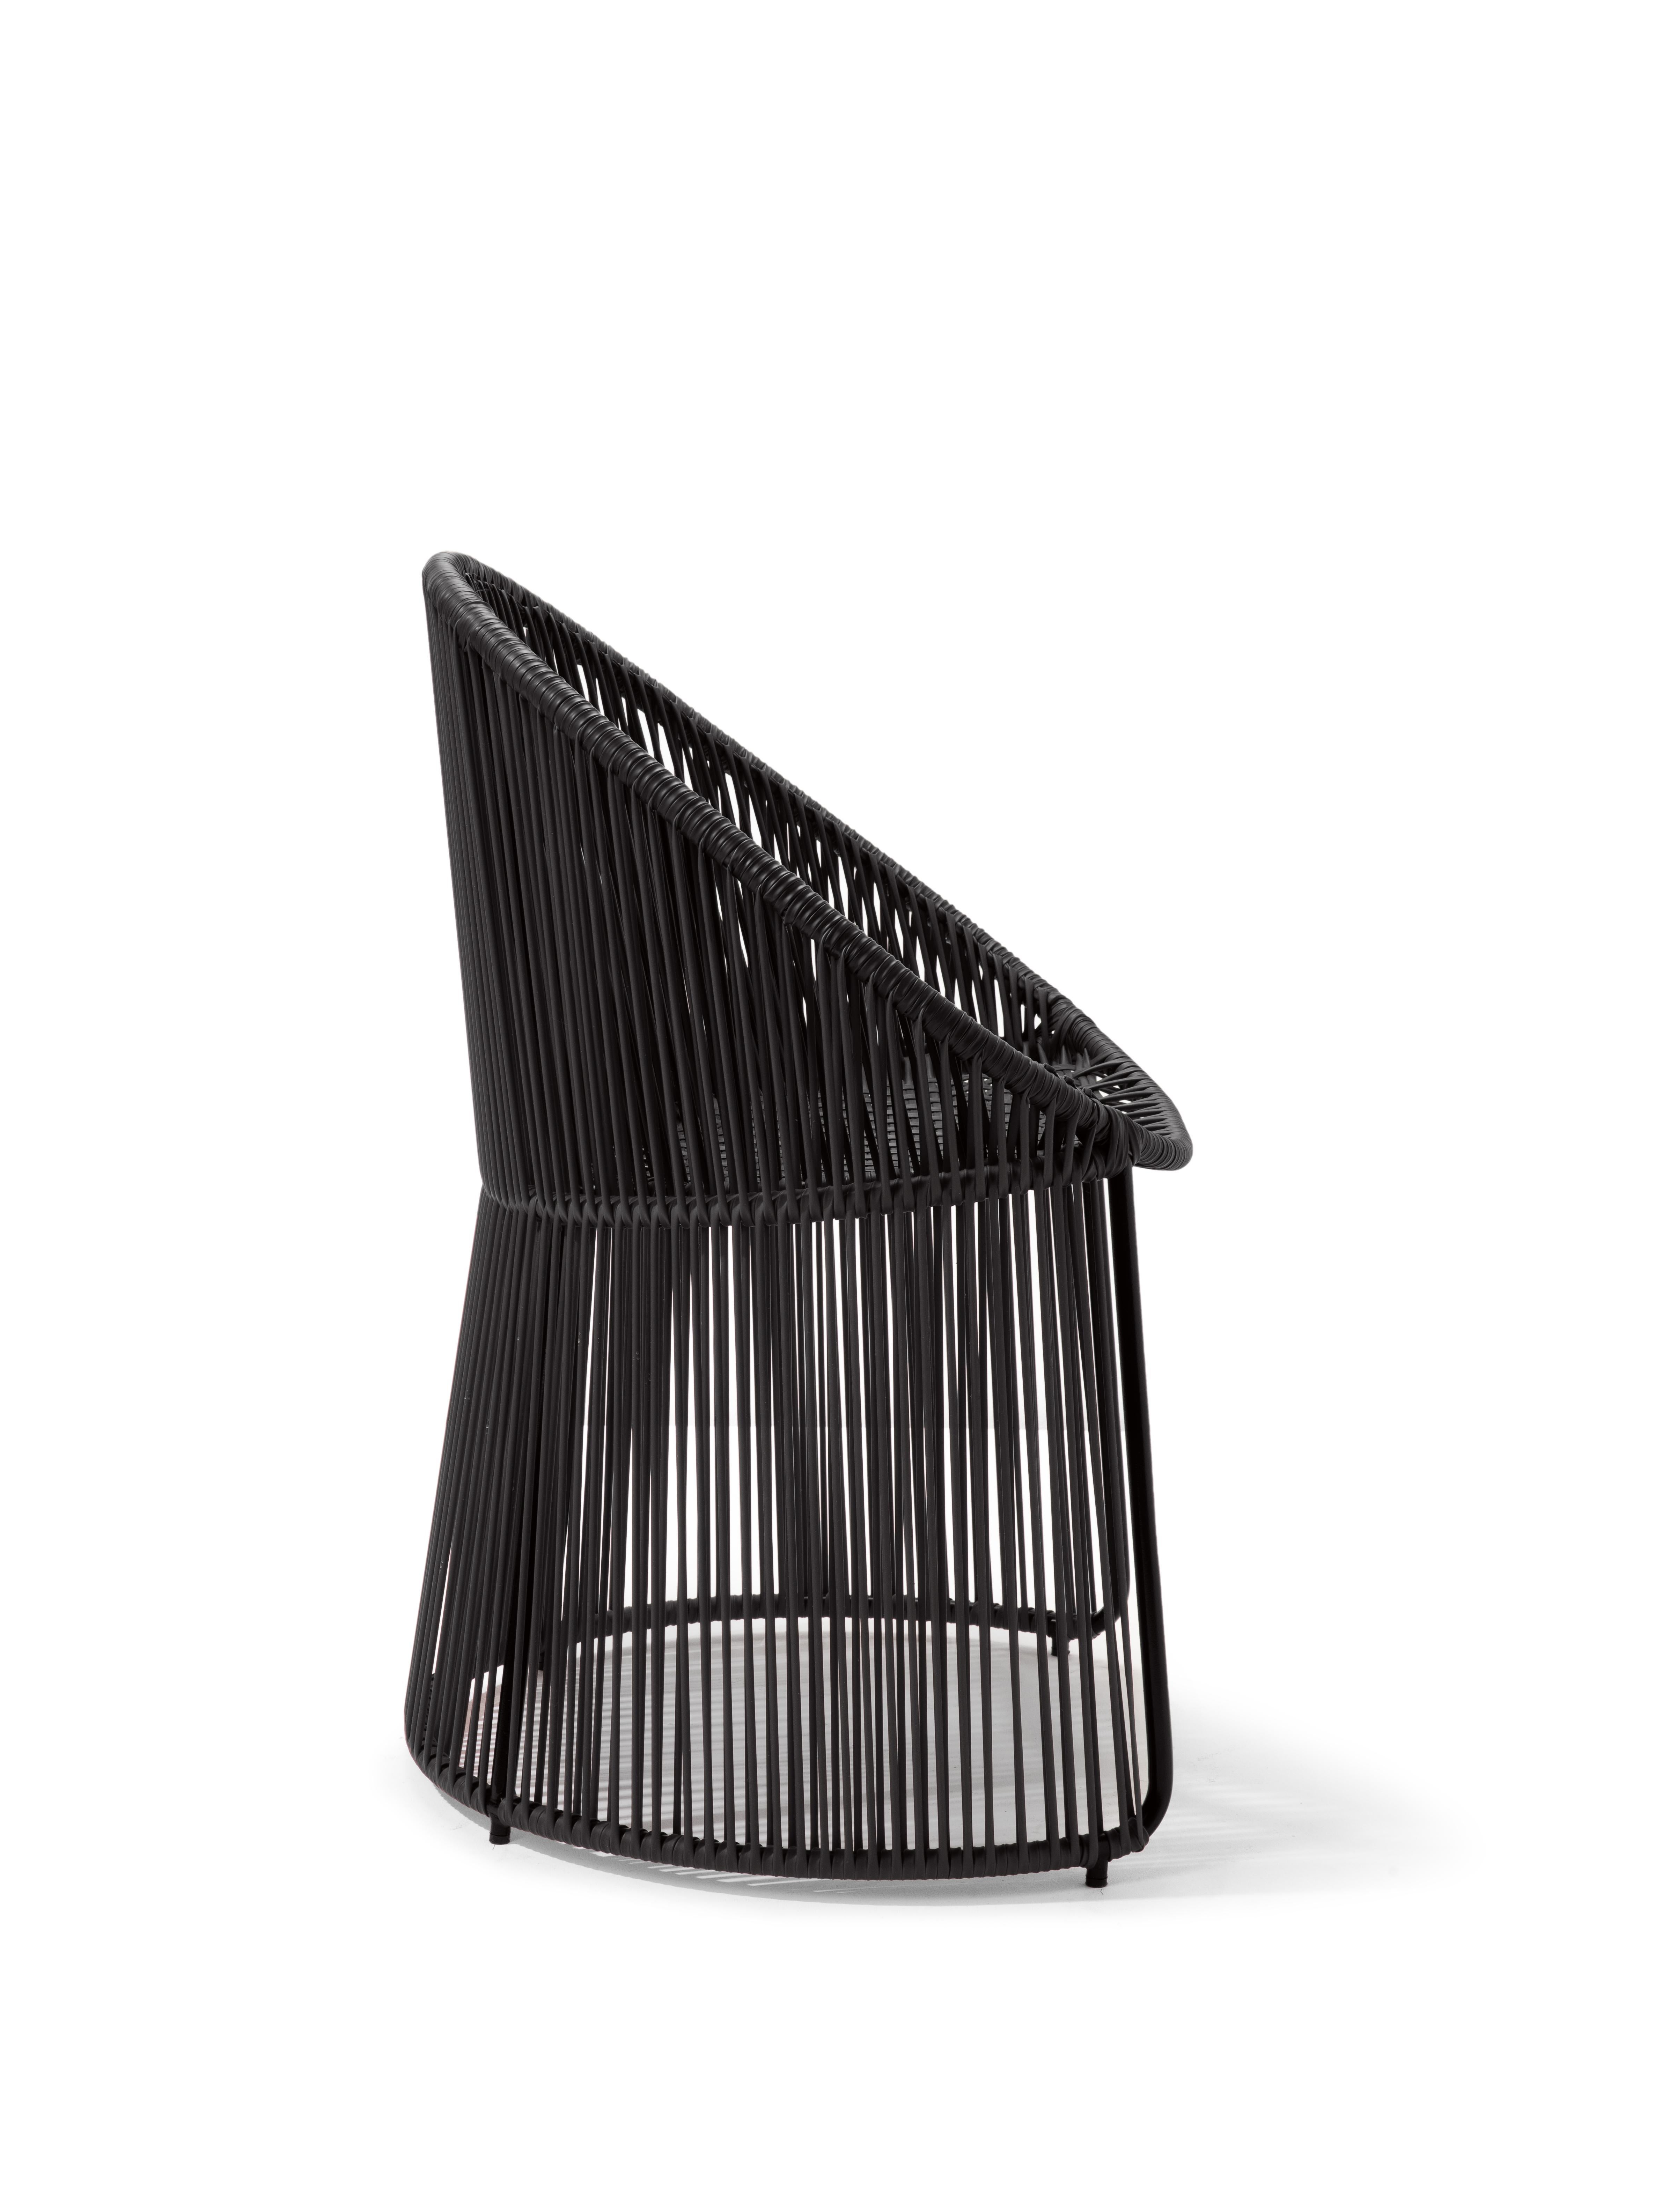 German Black Cartagenas Dining Chair by Sebastian Herkner